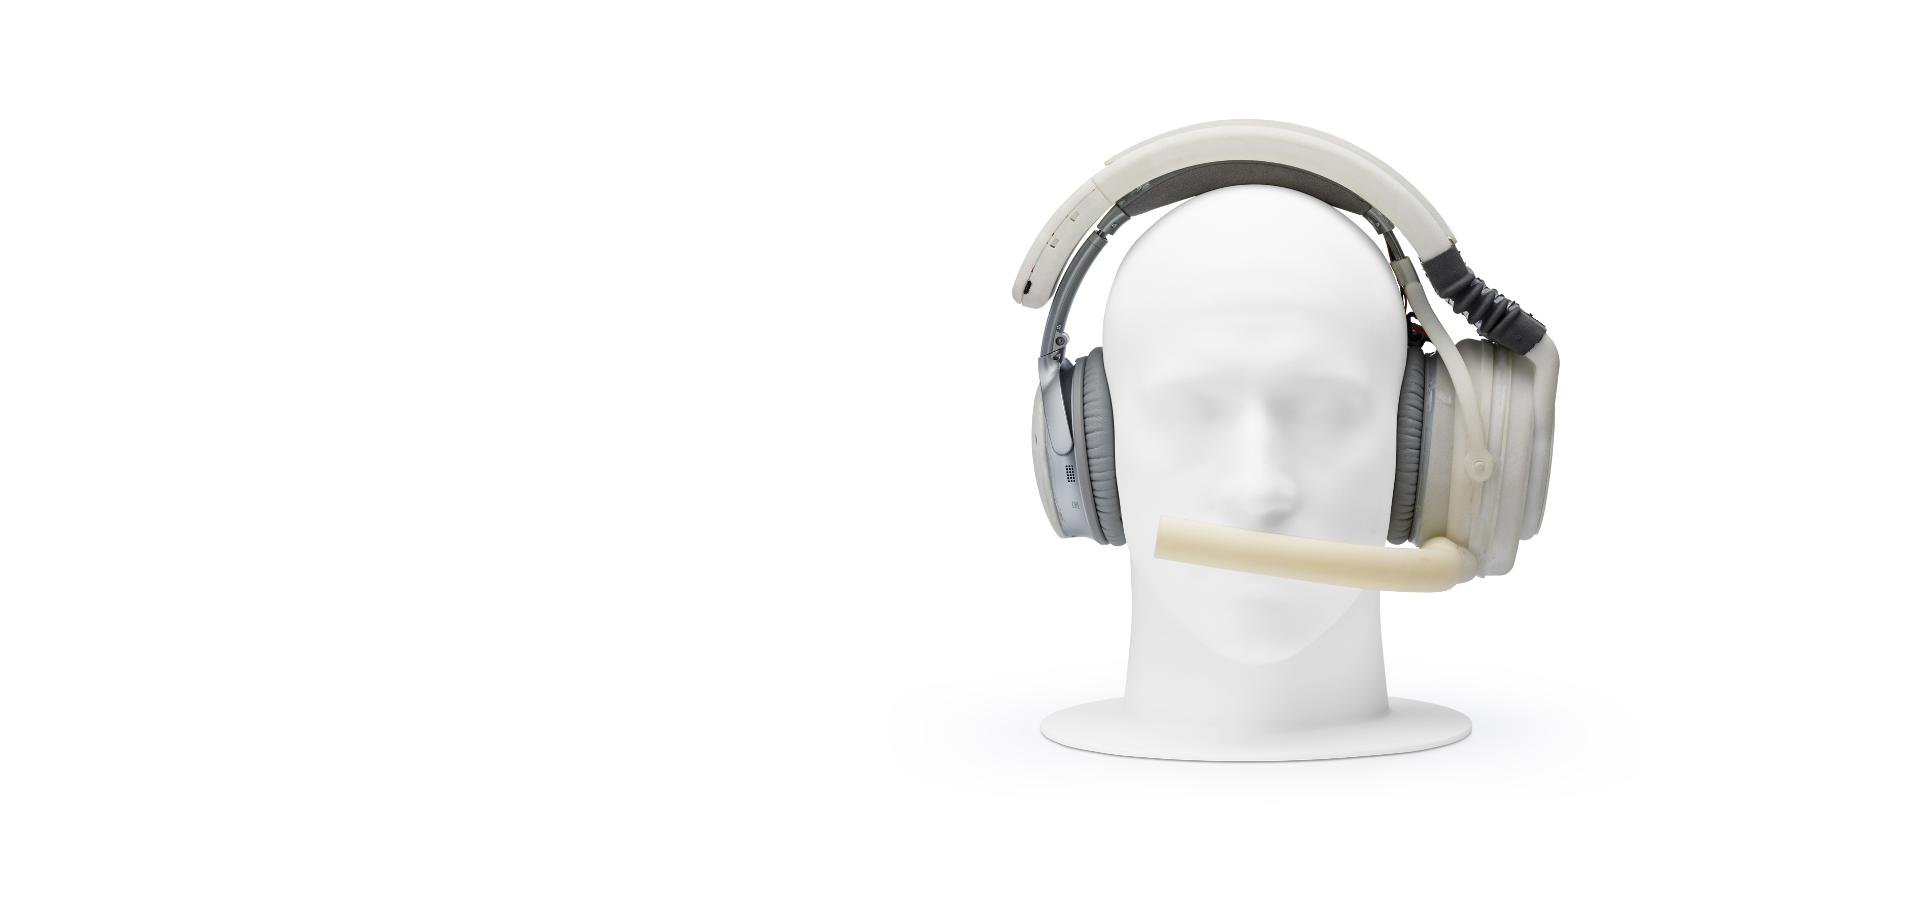 Cabeza de maniquí usando un prototipo de audífonos con boquilla